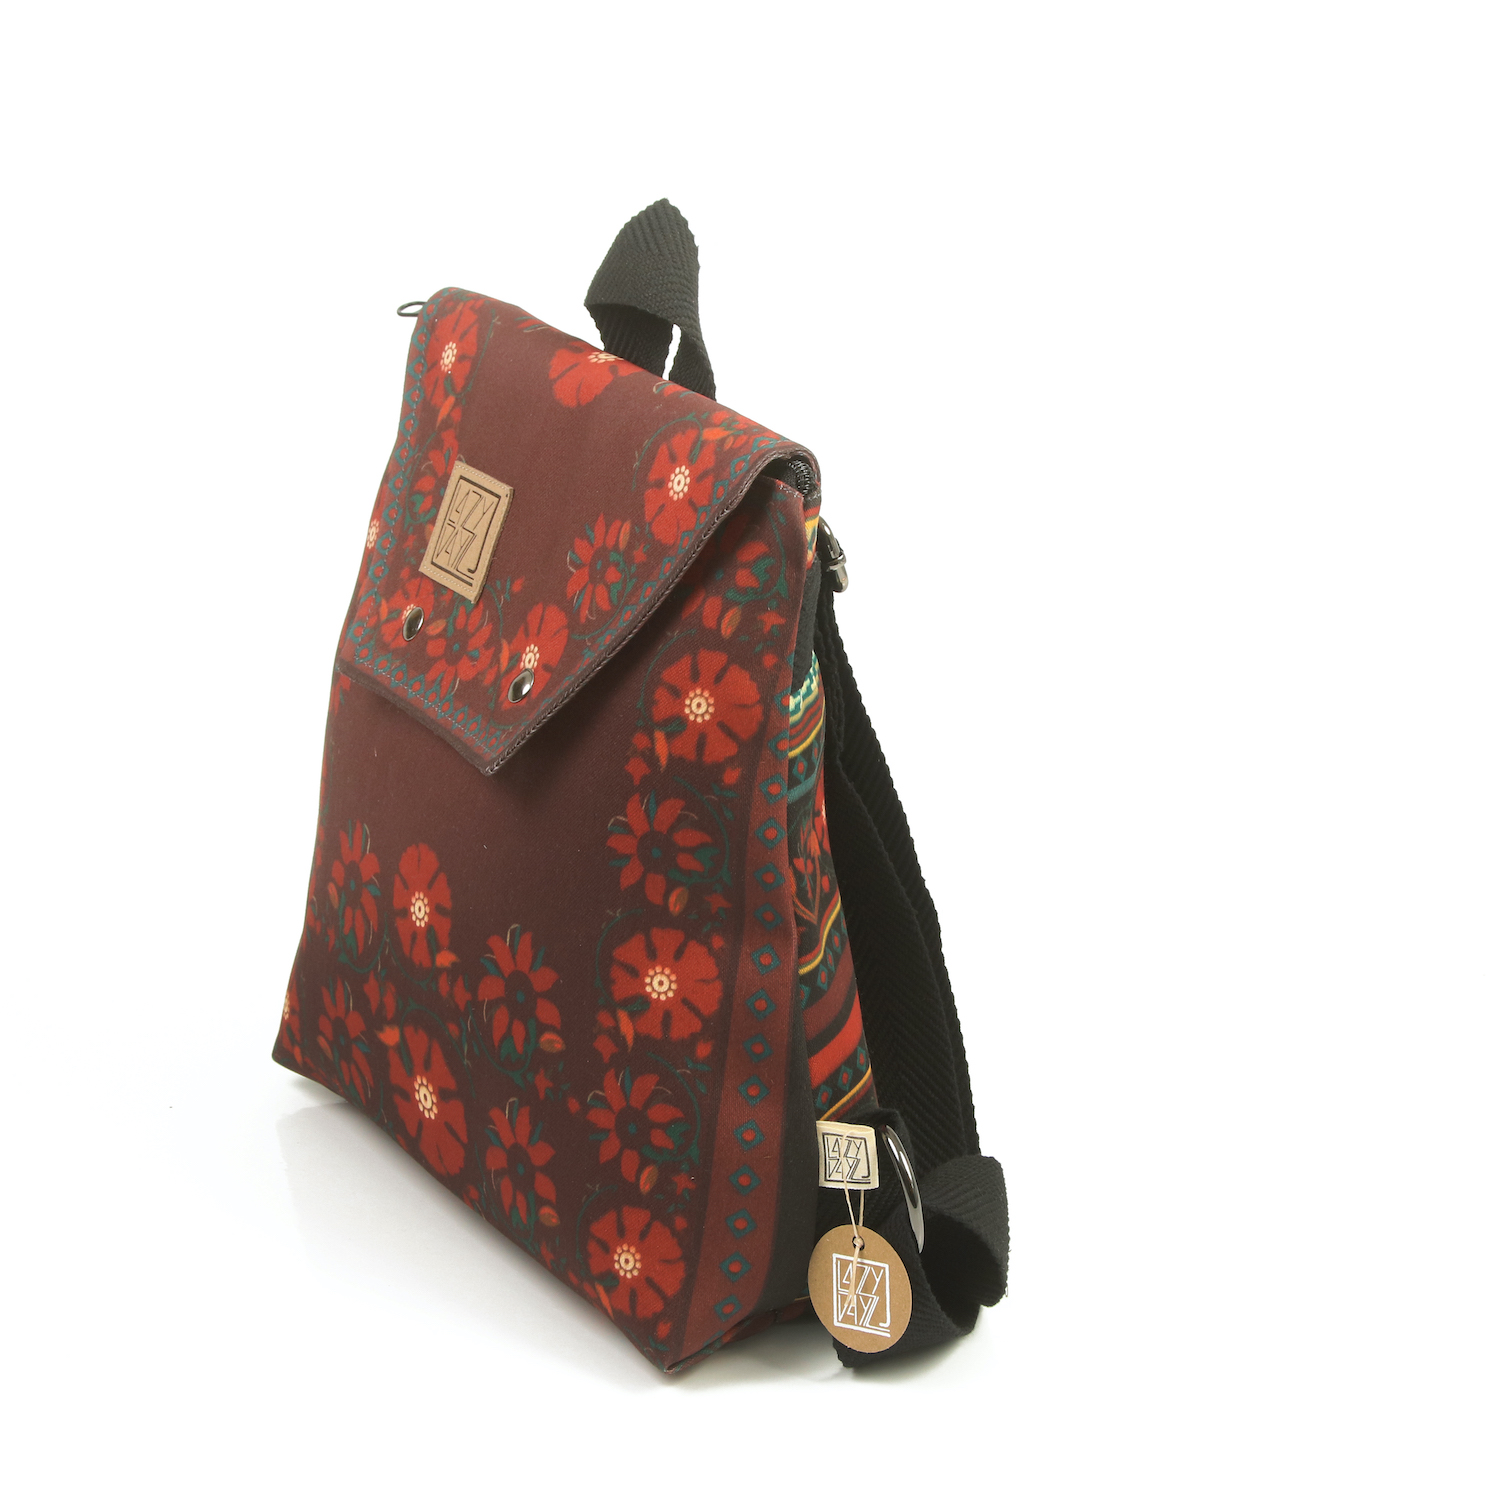 LazyDayz-Designs-Backpack-γυναικείος-σάκος-πλάτης-χειροποίητος bb0304b